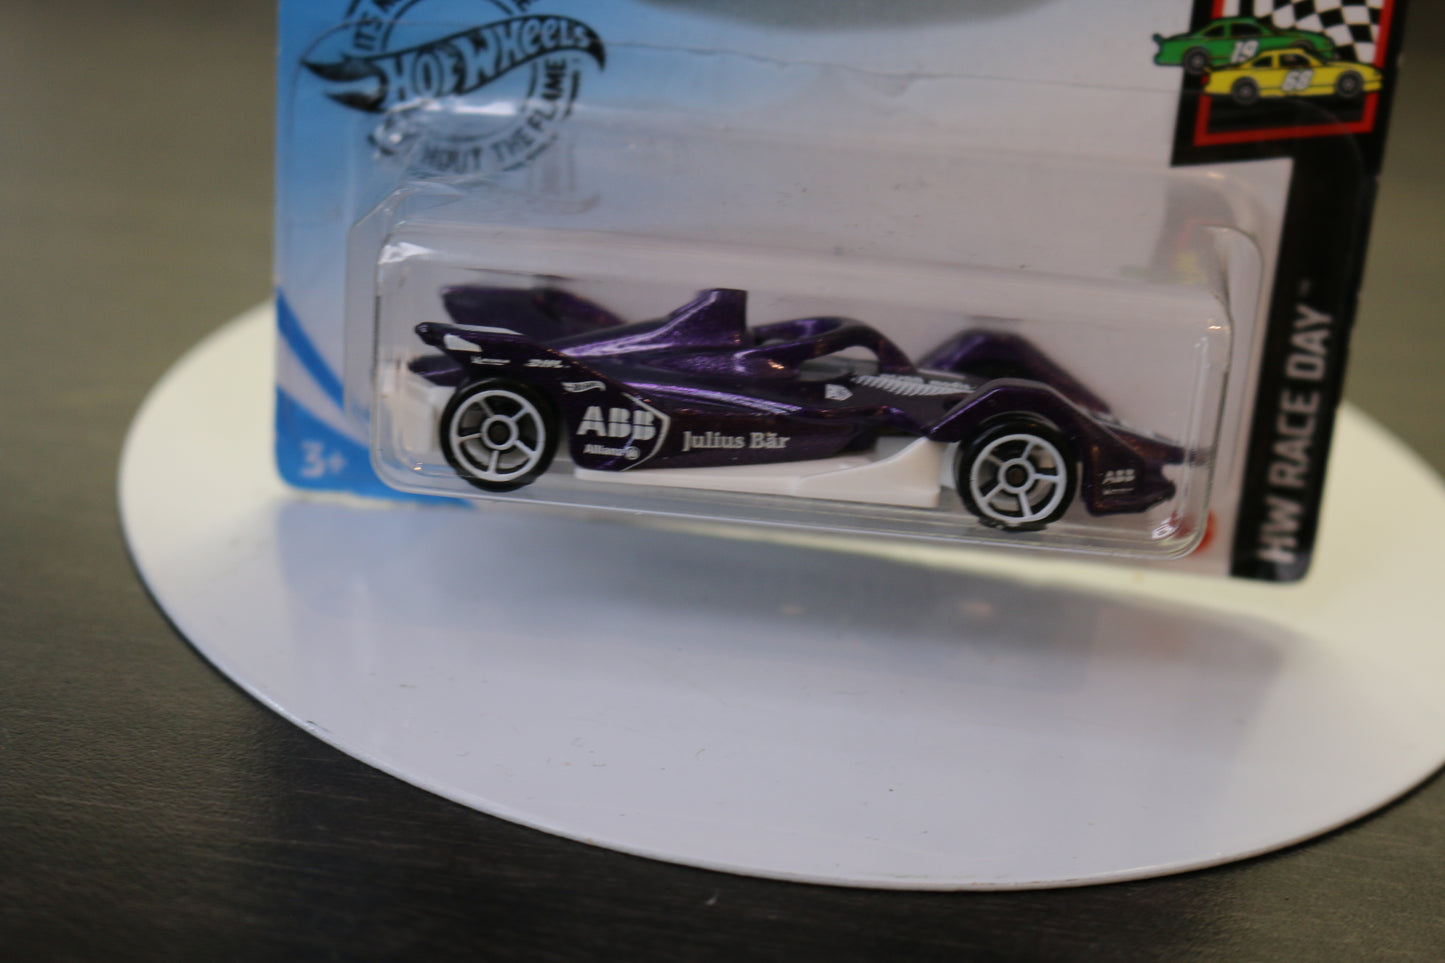 Hot Wheels 2020 Hw Race Day 1/10 Purple Formula E Gen 2 Car 107/250